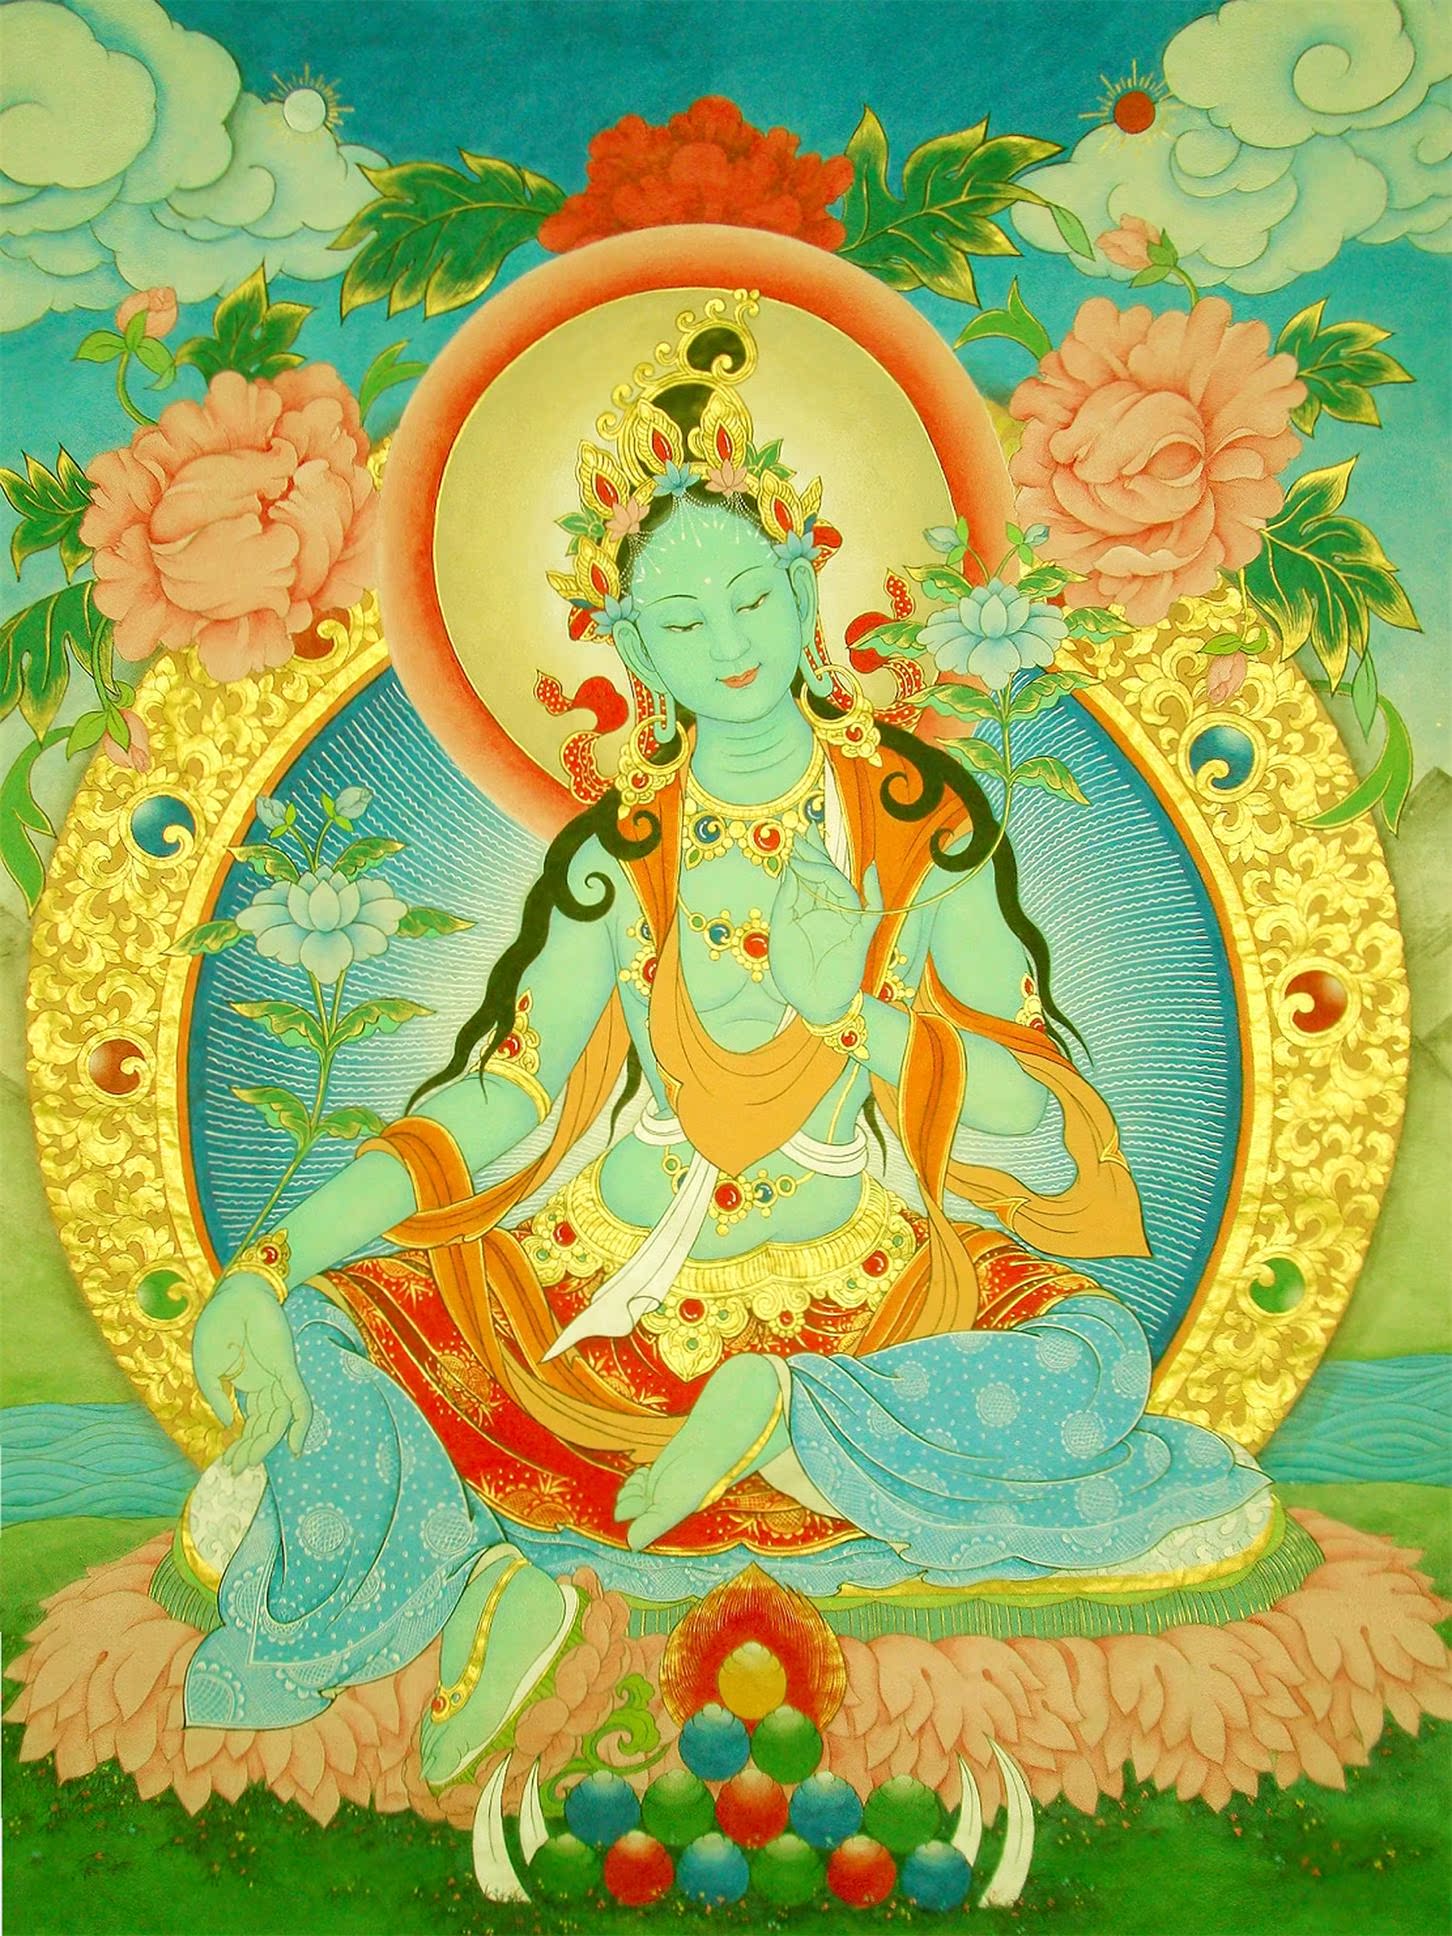 定制藏密佛教画像南无绿度母佛像绿度母佛菩萨圣救度佛母度母画像